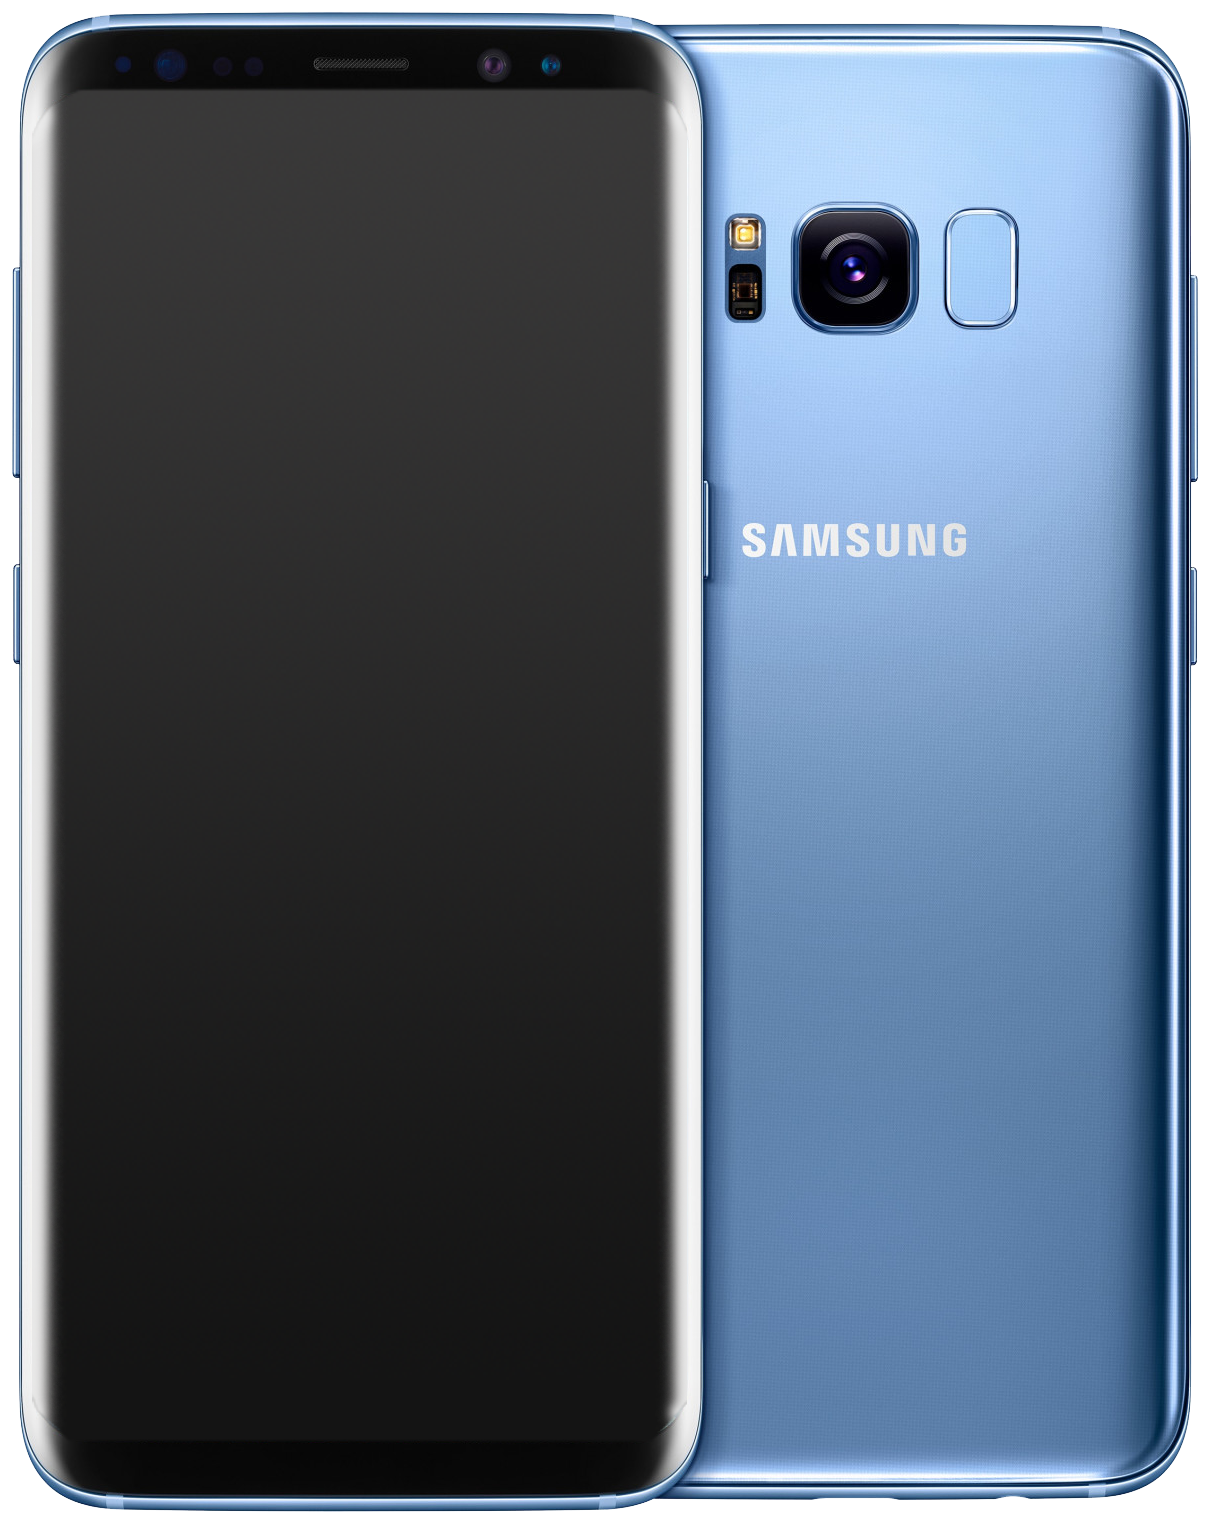 Samsung Galaxy S8 Dual-SIM blau - Ohne Vertrag